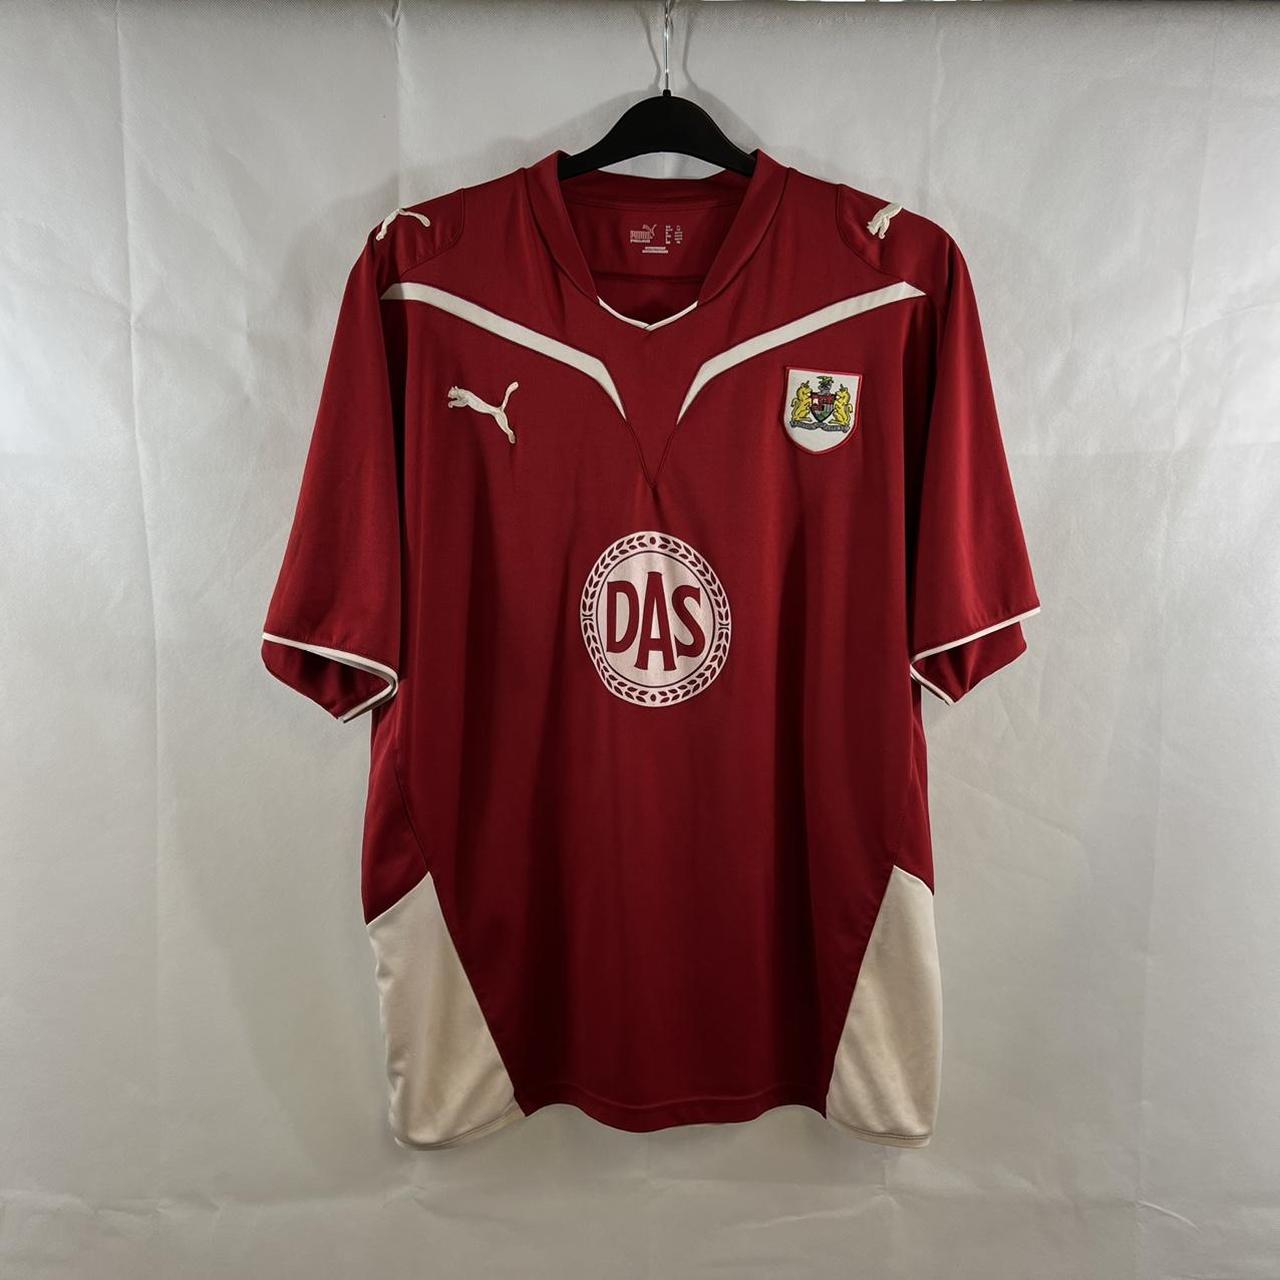 Bristol City Home Football Shirt 2009/10 Adults XL - Depop